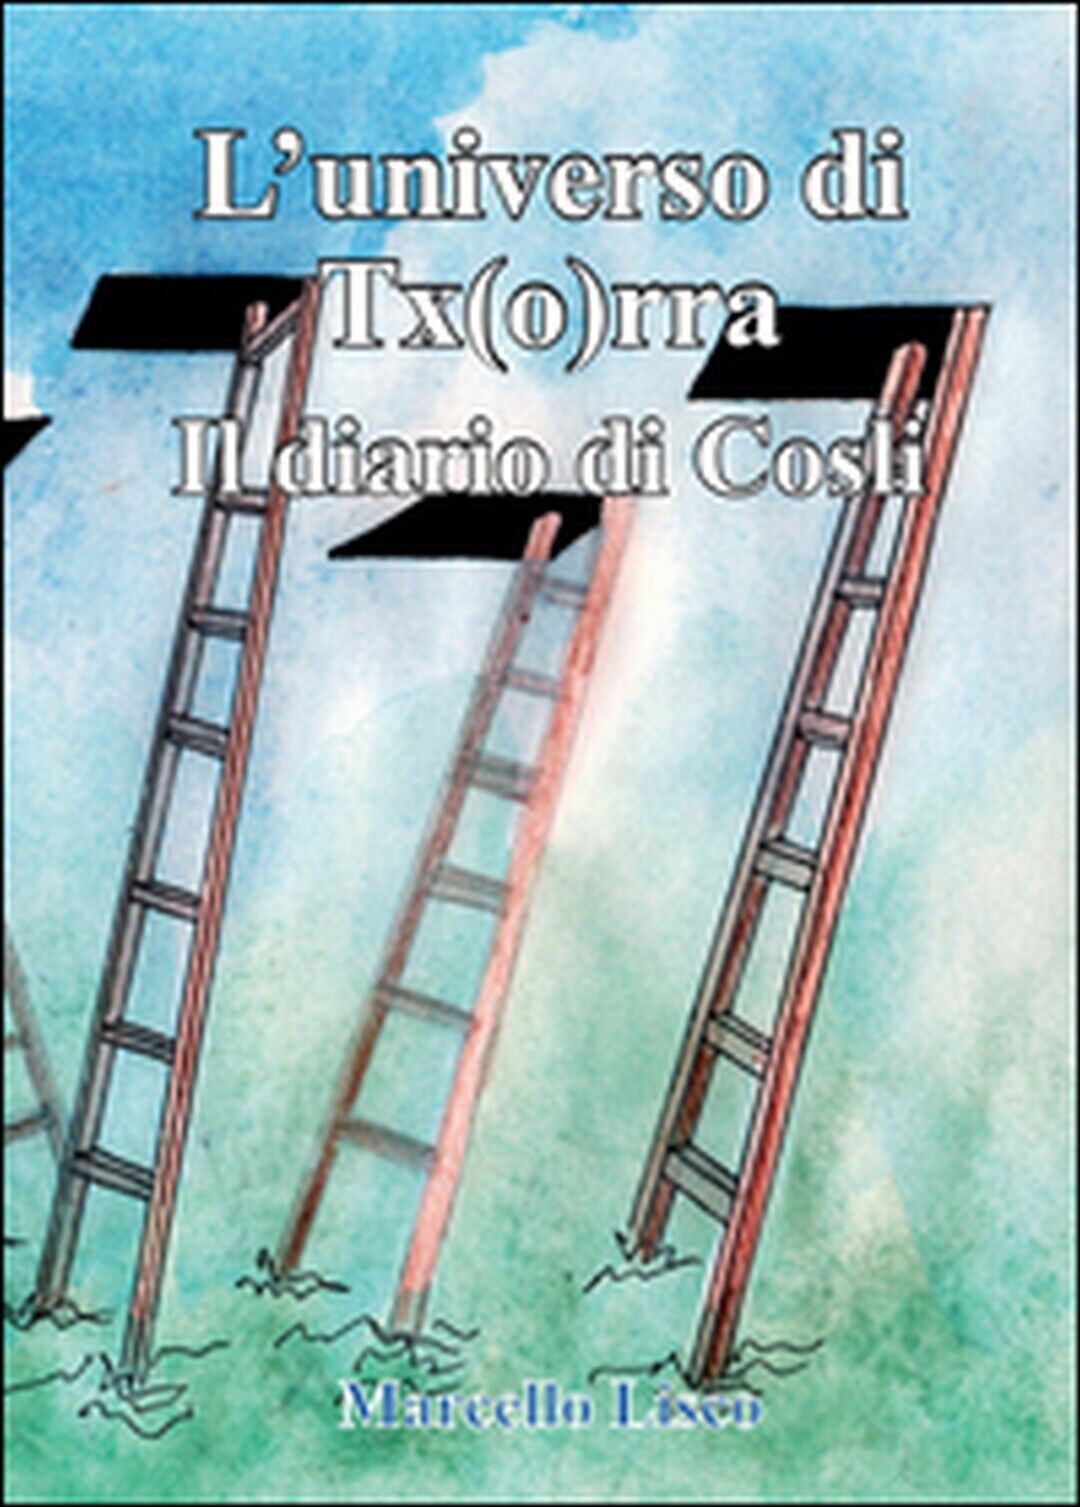 Il diario di Cosli. L'universo di Tx(o)rra, Marcello Lisco,  2015,  Youcanprint